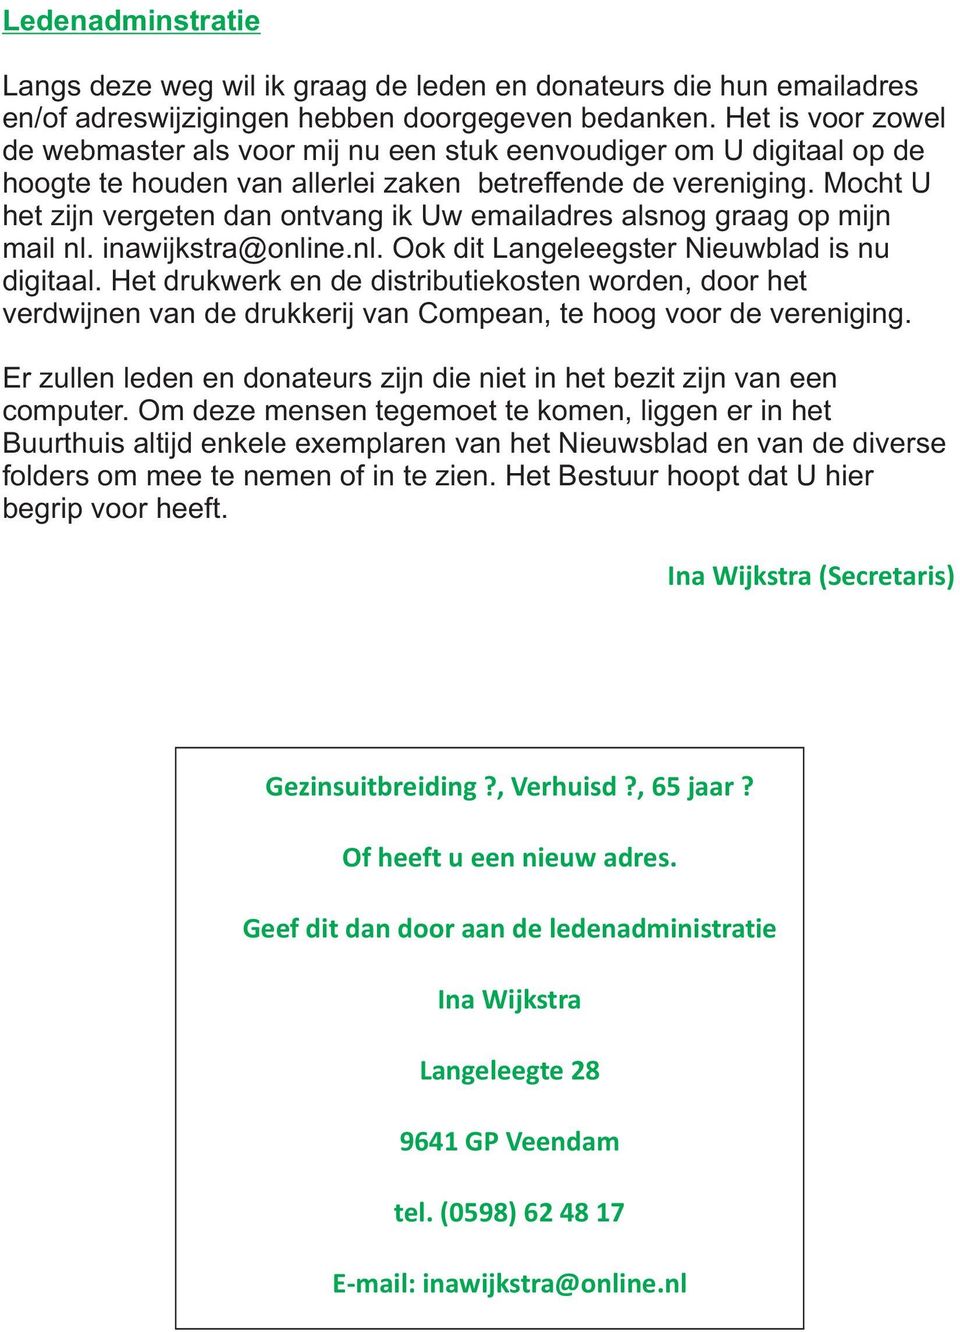 Mocht U ht zijn vrgtn dan ontvang ik Uw mailadrs alsnog graag op mijn mail nl. inawijkstra@onlin.nl. Ook dit Langlgstr Niuwblad is nu digitaal.